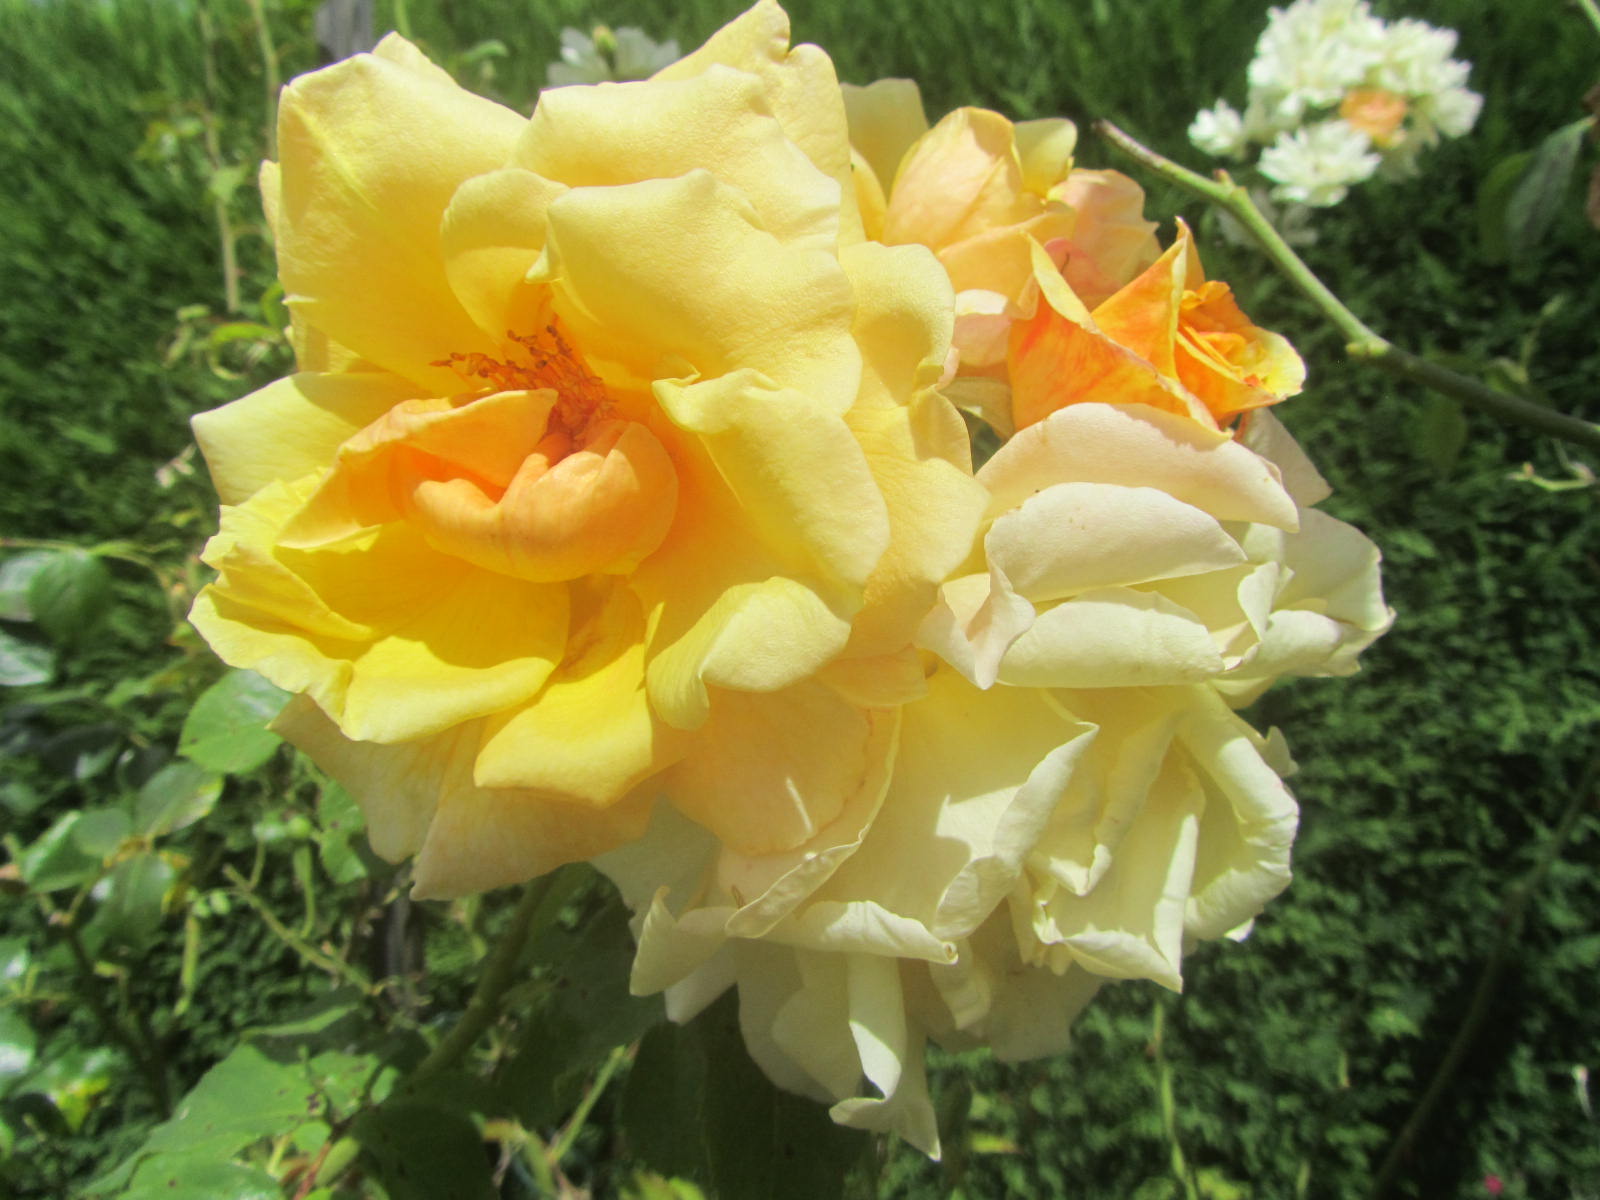 Mini-fleurs en pot kraft - H 17 cm - Blanc, Rose